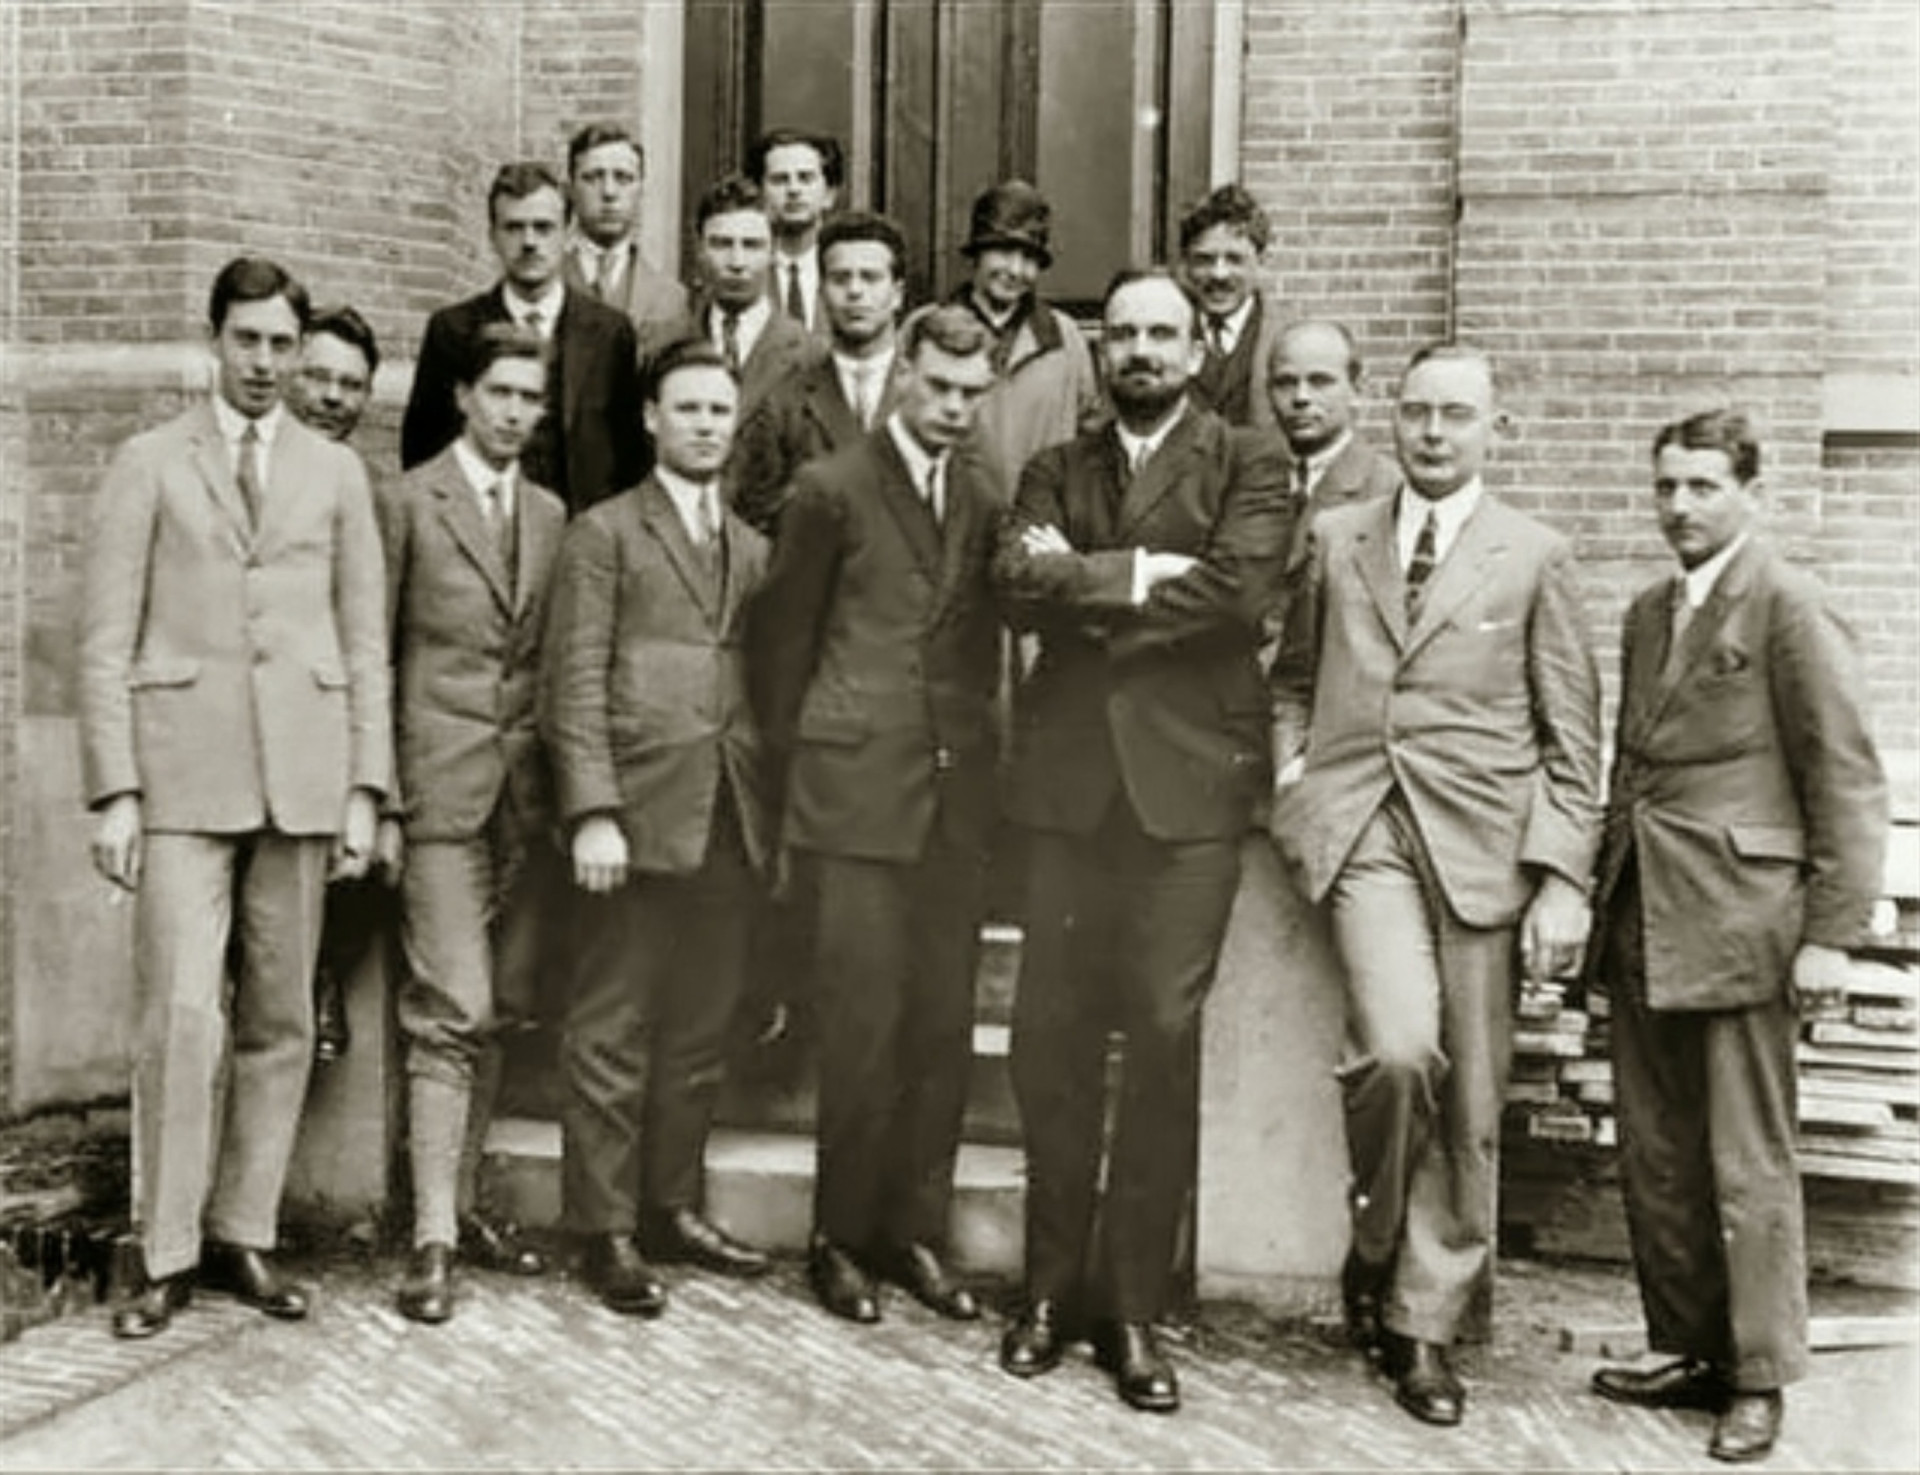 <p>Oppenheimer erhielt einen Bachelorabschluss in Chemie von der Universität Harvard im Jahr 1925 und einen Doktortitel in Physik von der deutschen Universität Göttingen im Jahr 1927. Hier sieht man ihn im Jahr 1926 im niederländischen Leiden. Er steht in der mittleren Reihe, der zweite von links.</p>